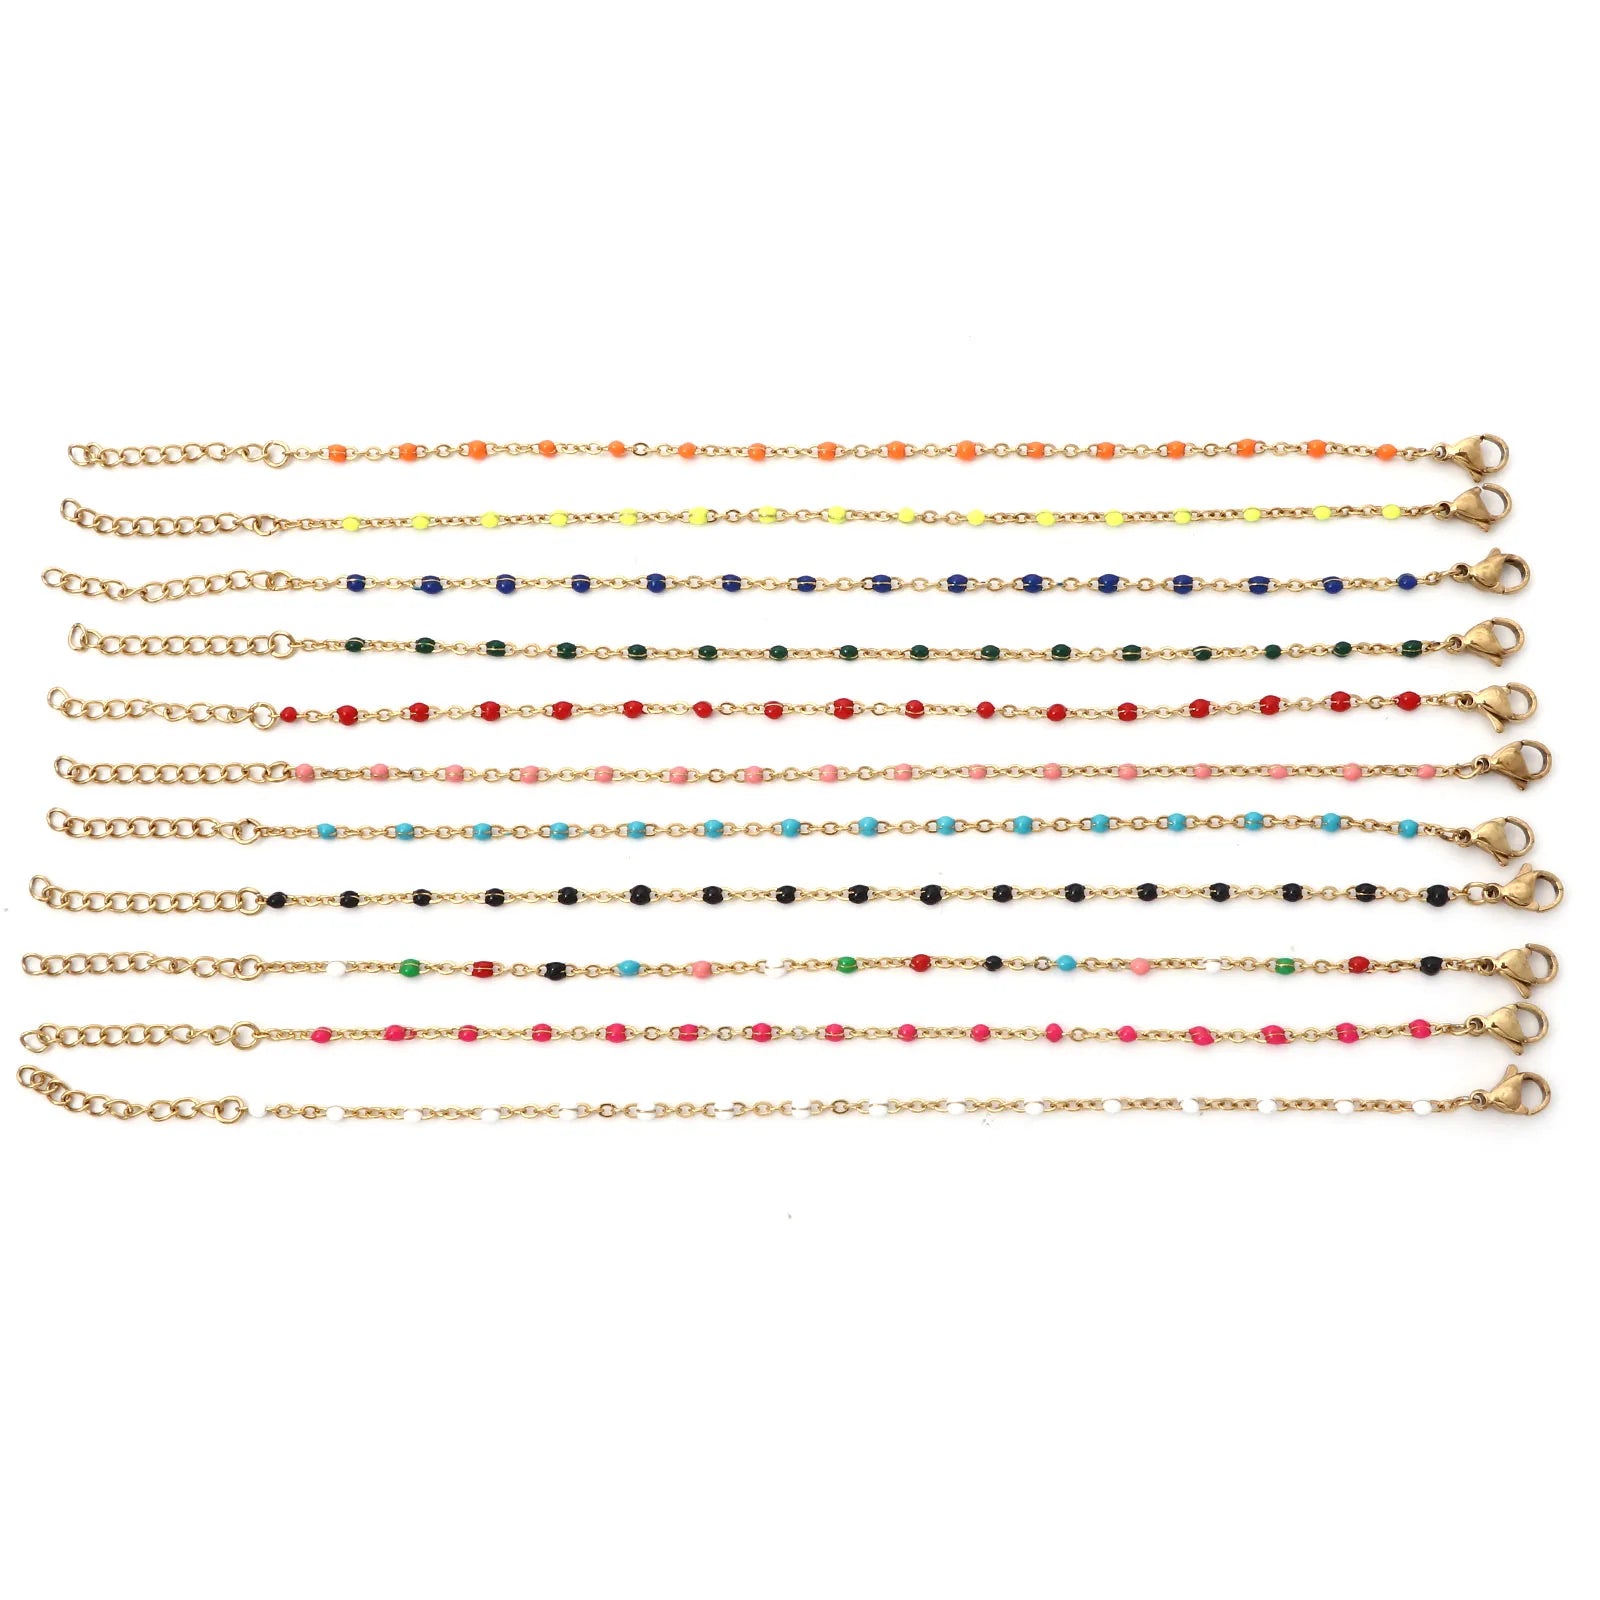 Multicolor Enamel For Women Jewelry Gifts 17cm long,1PC